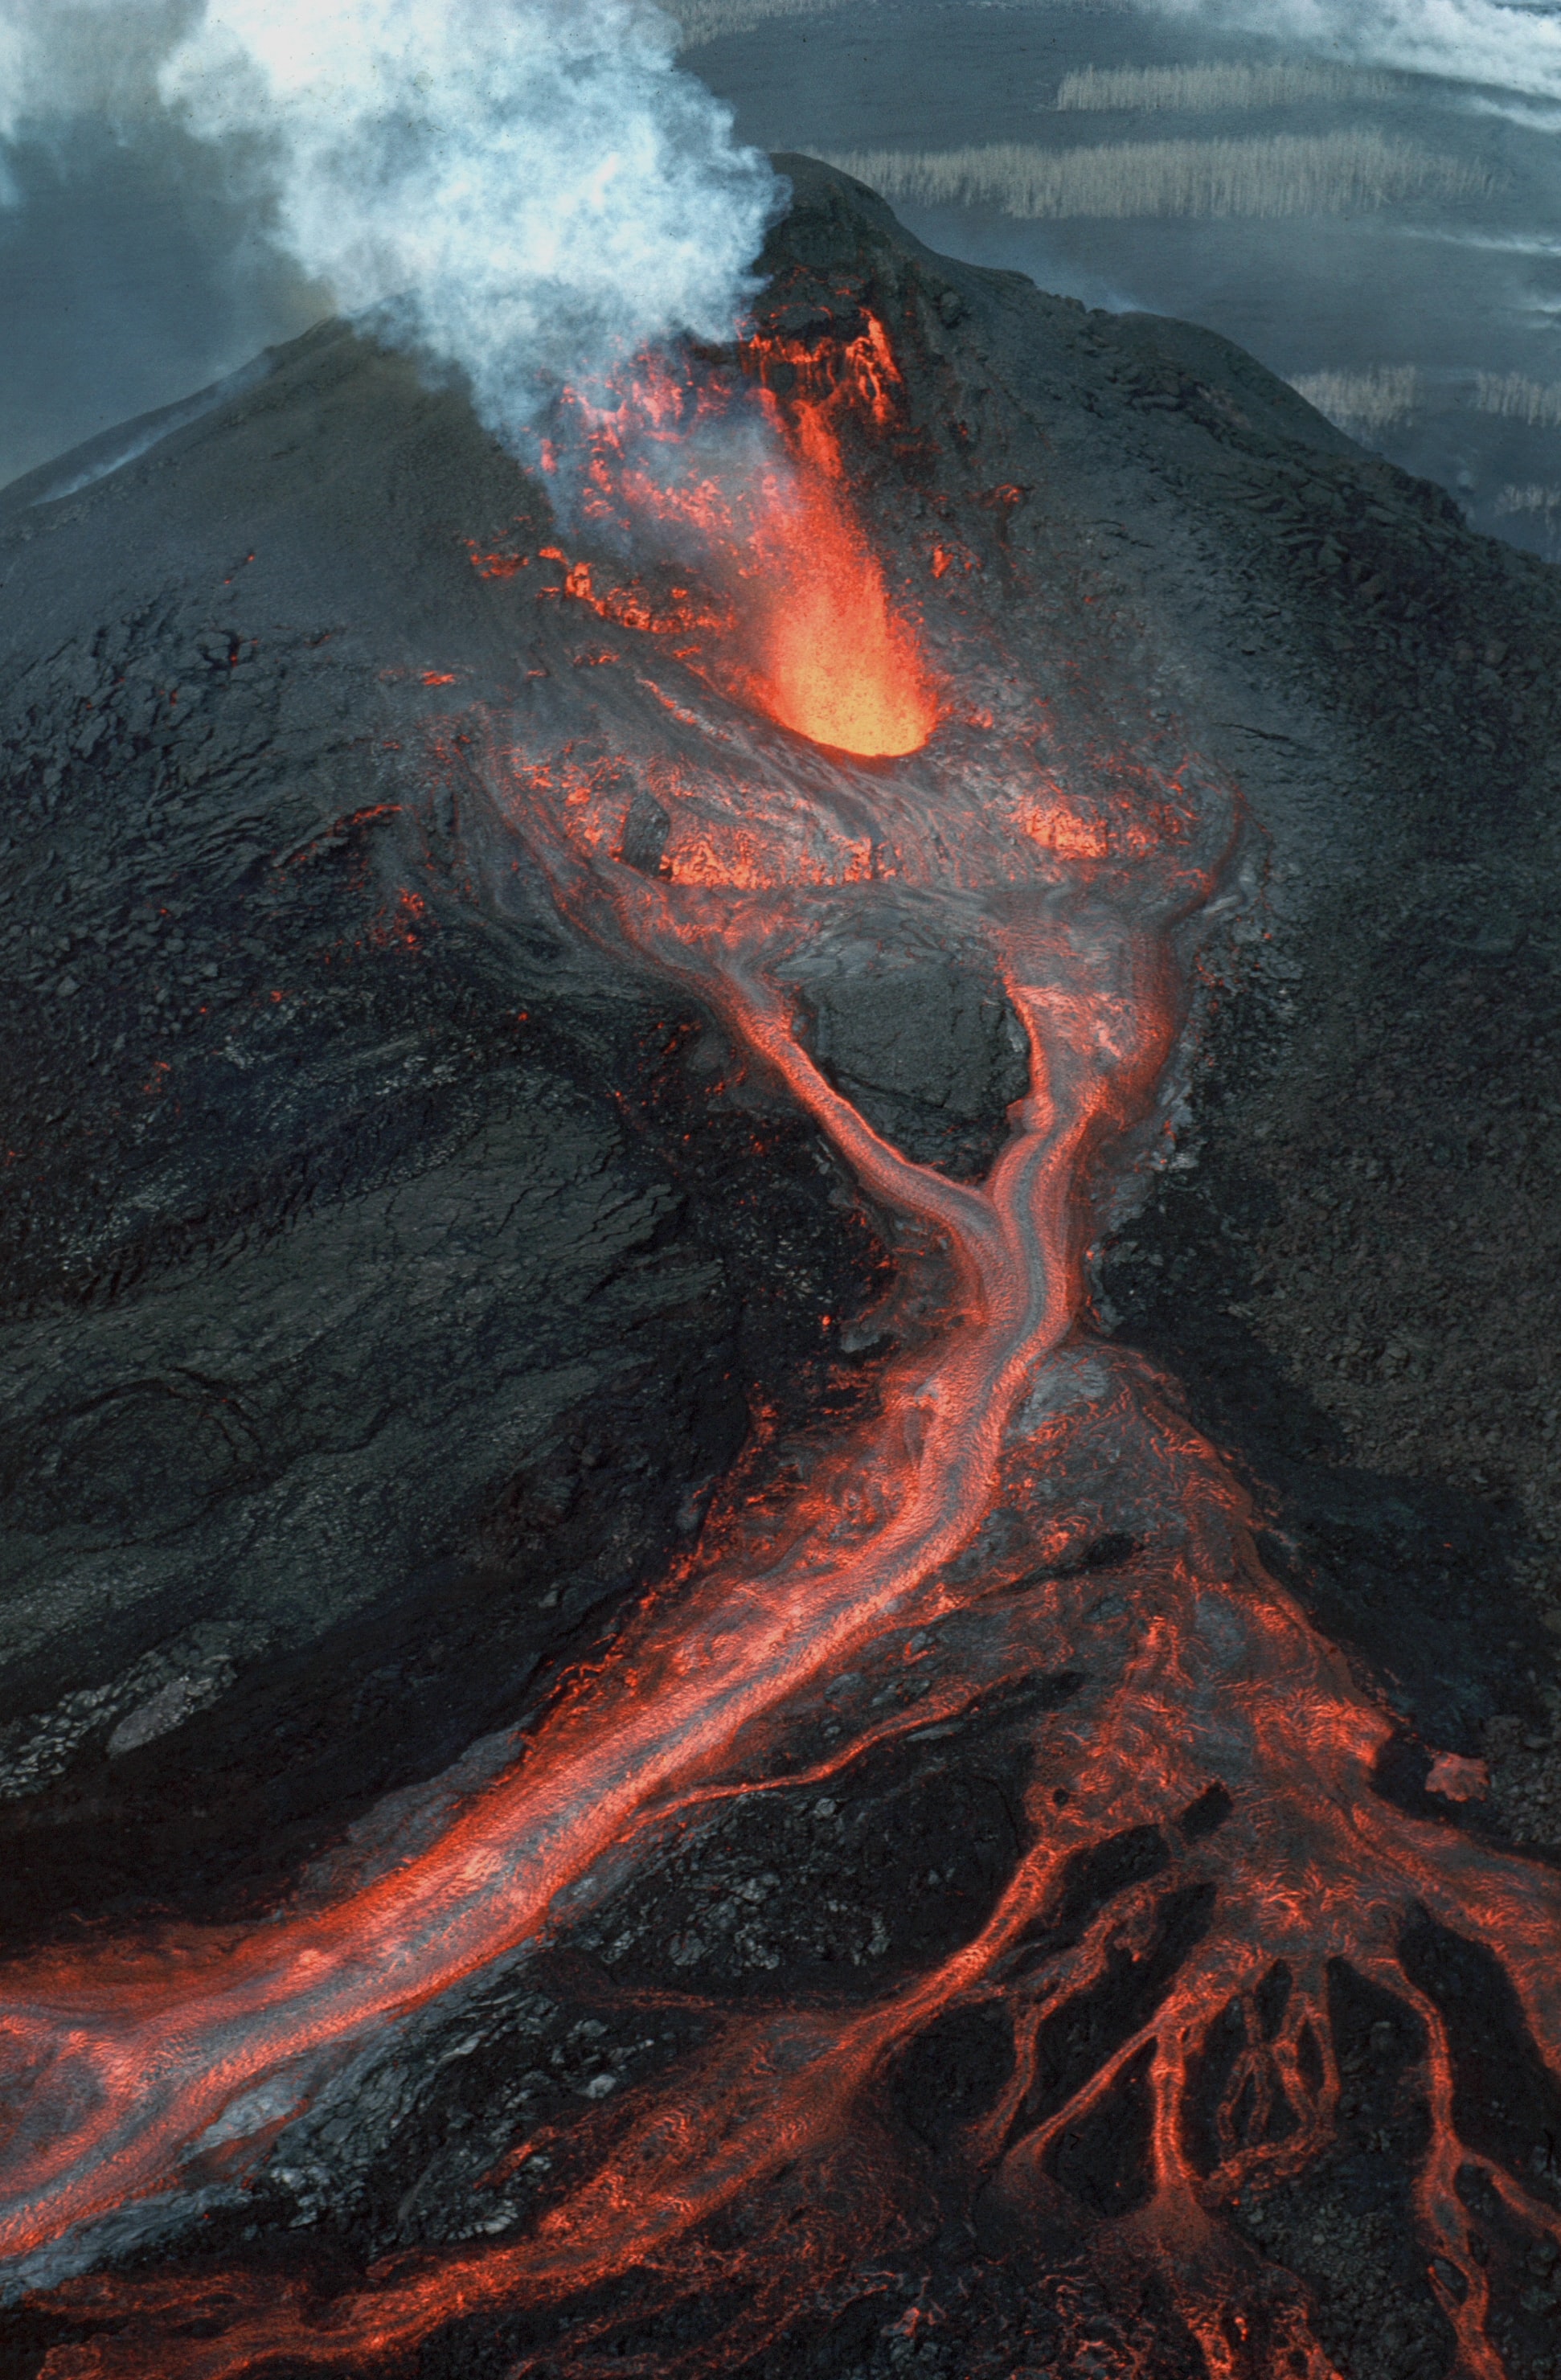 Image of erupting volcano